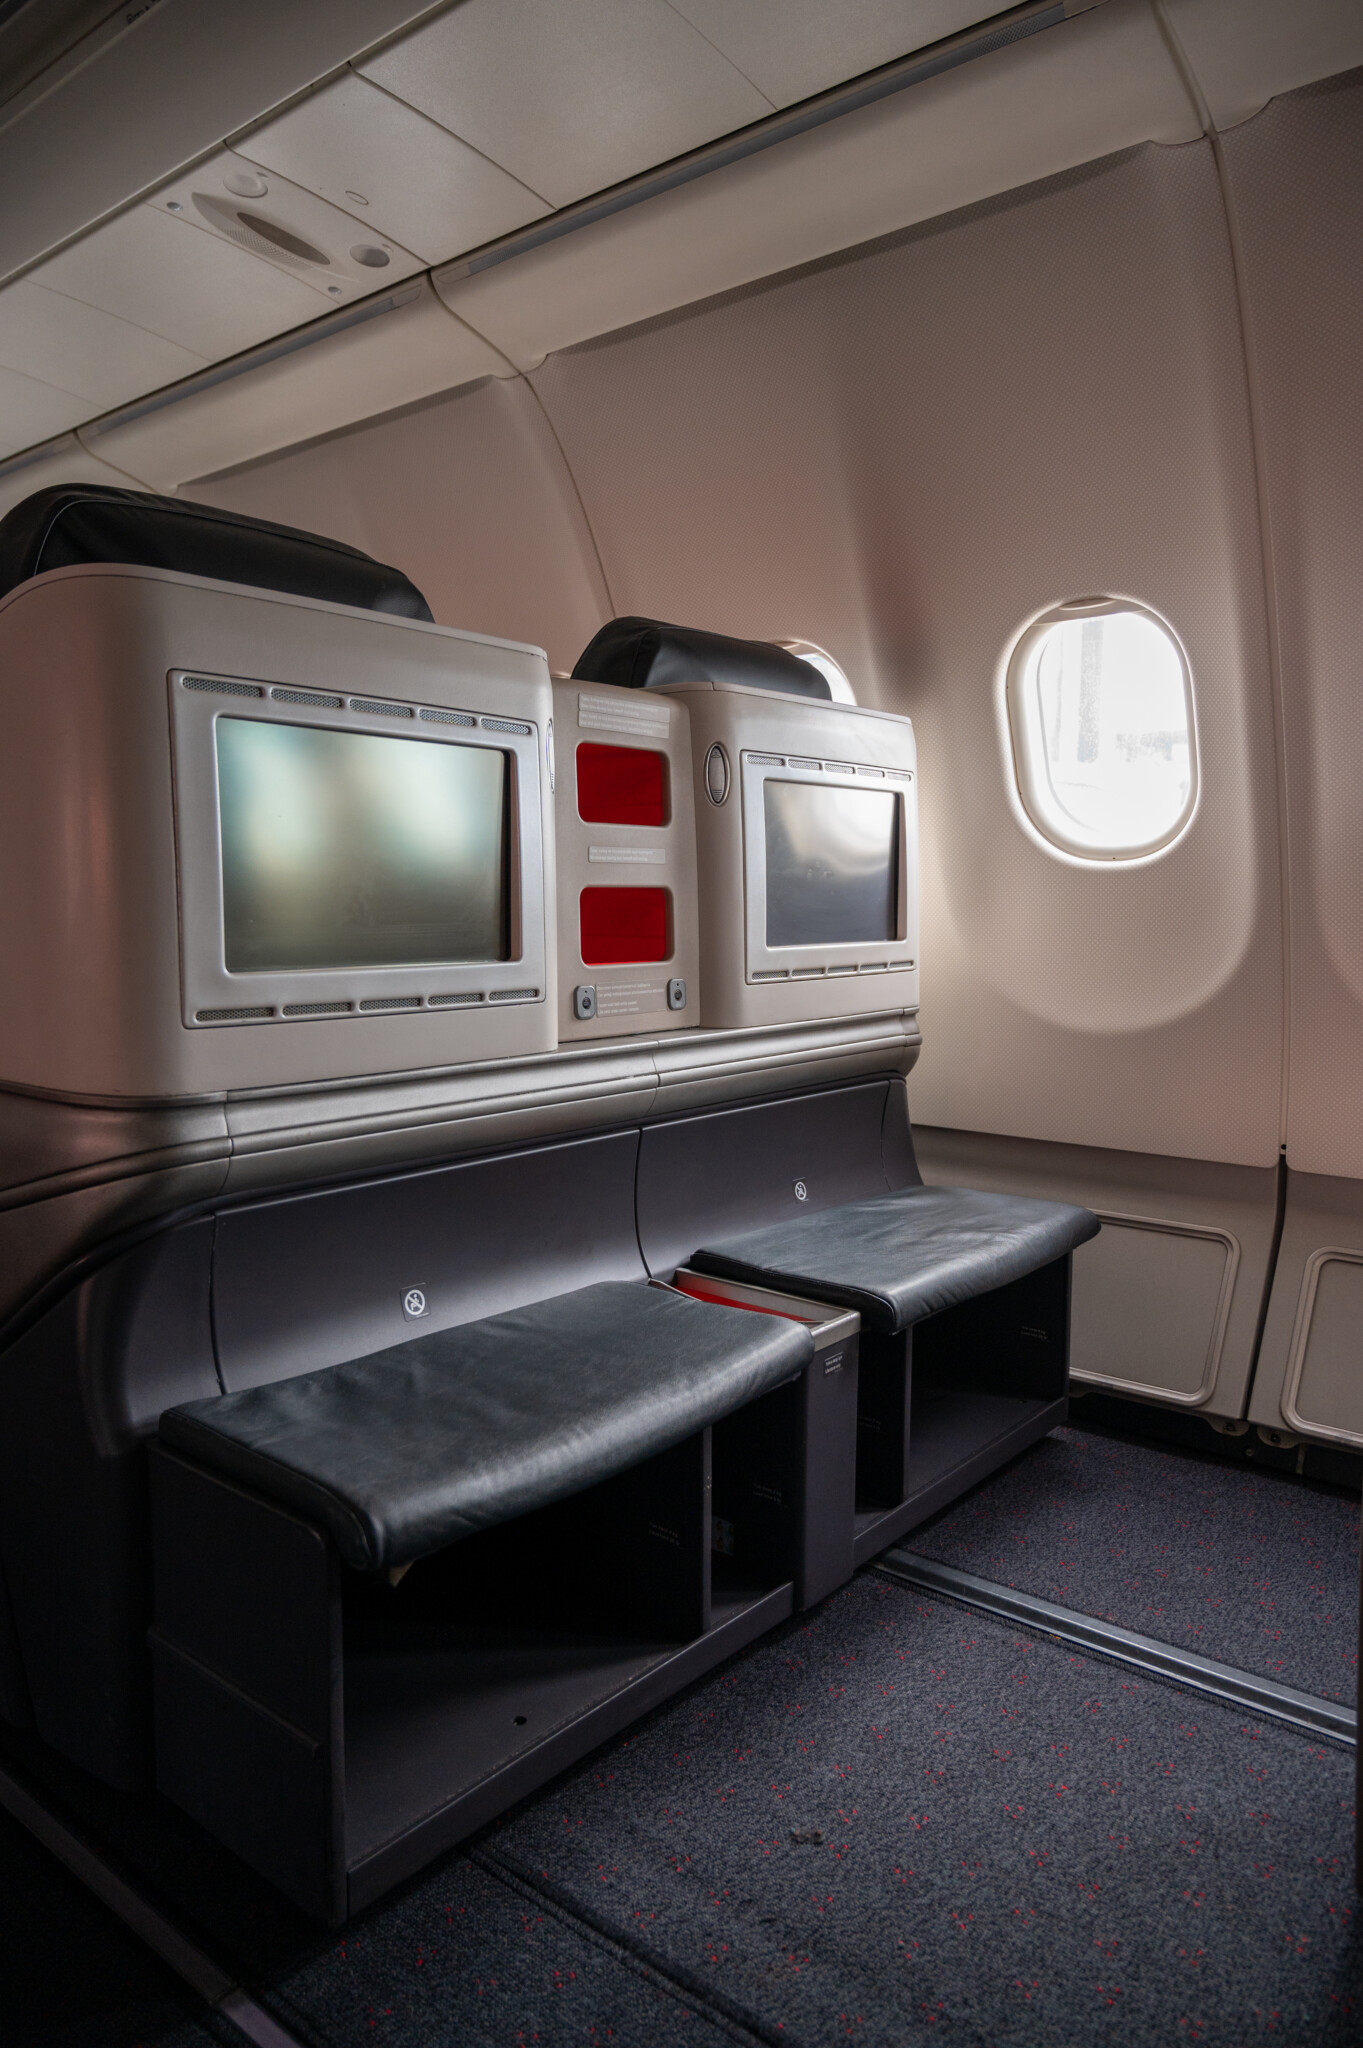 Monitore und Fußraum in der Turkish Airlines Business Class im A330-300